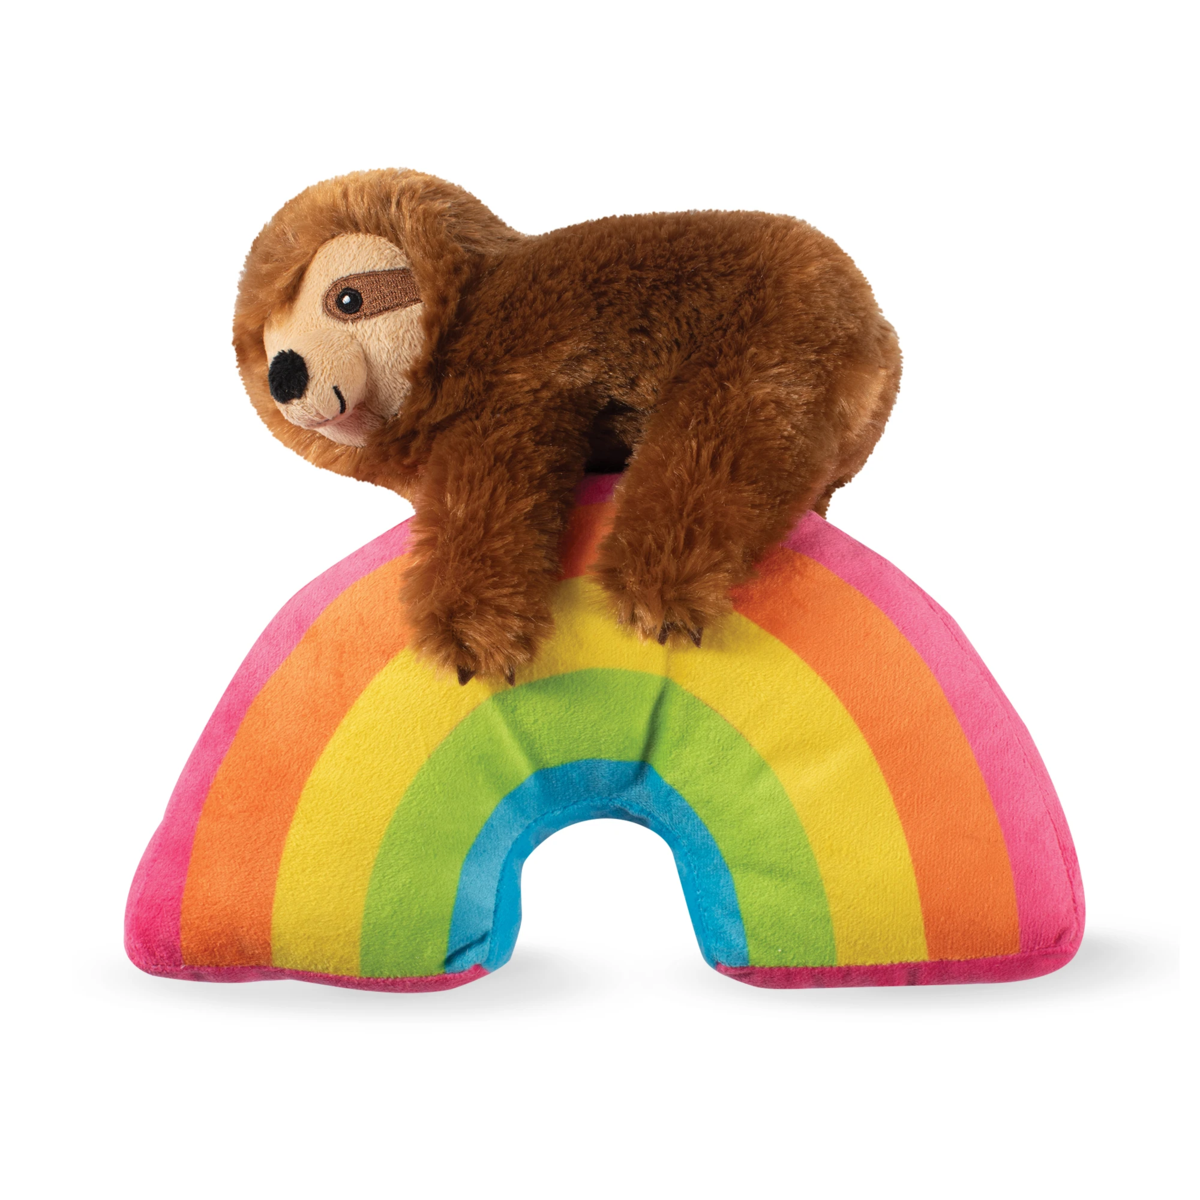 Fringe Studio Ziggy Sloth on a Rainbow Dog Squeaky Plush Toy